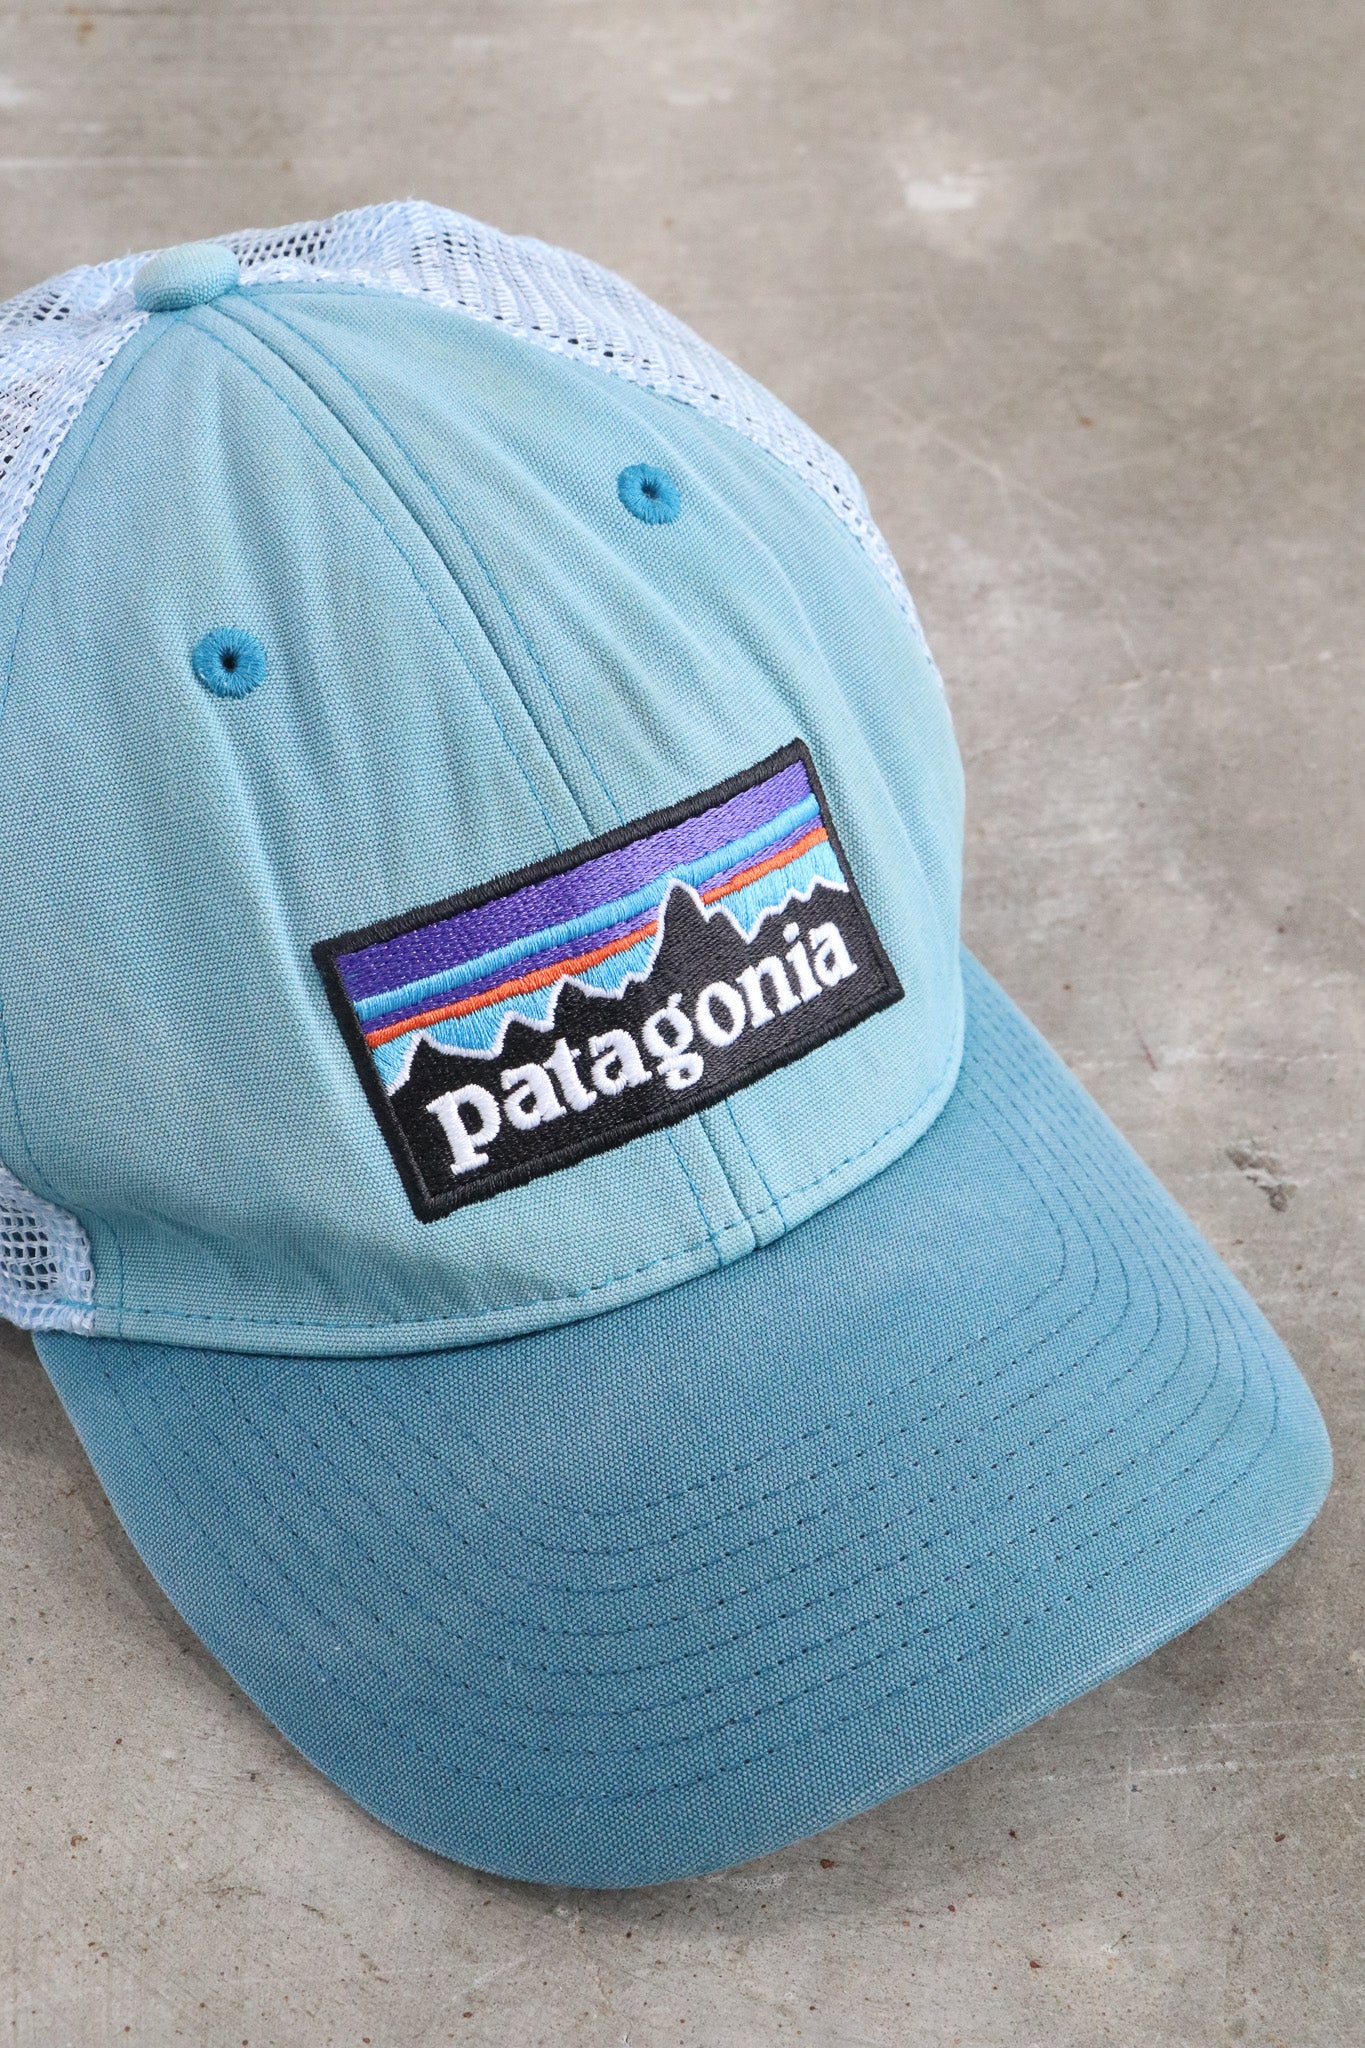 Vintage Patagonia Trucker Hat